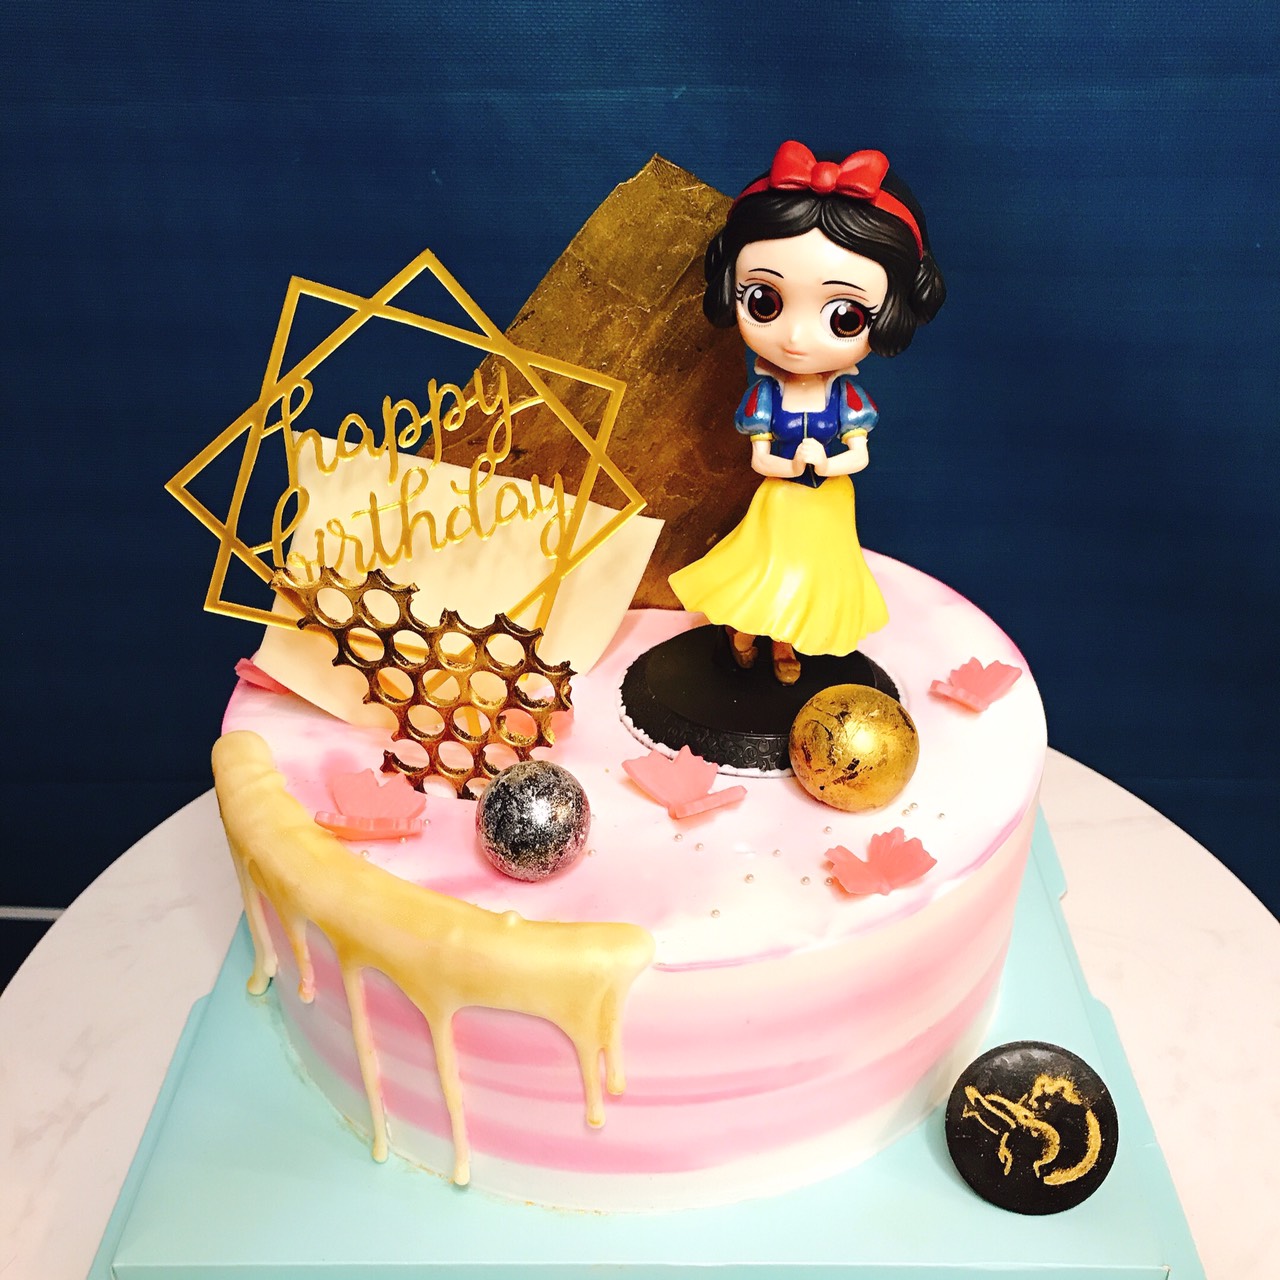 公主城堡蛋糕 | InCake 3D立體蛋糕專門店 (3D cake shop) ~ Contact:62855321 (Whatsapp ...